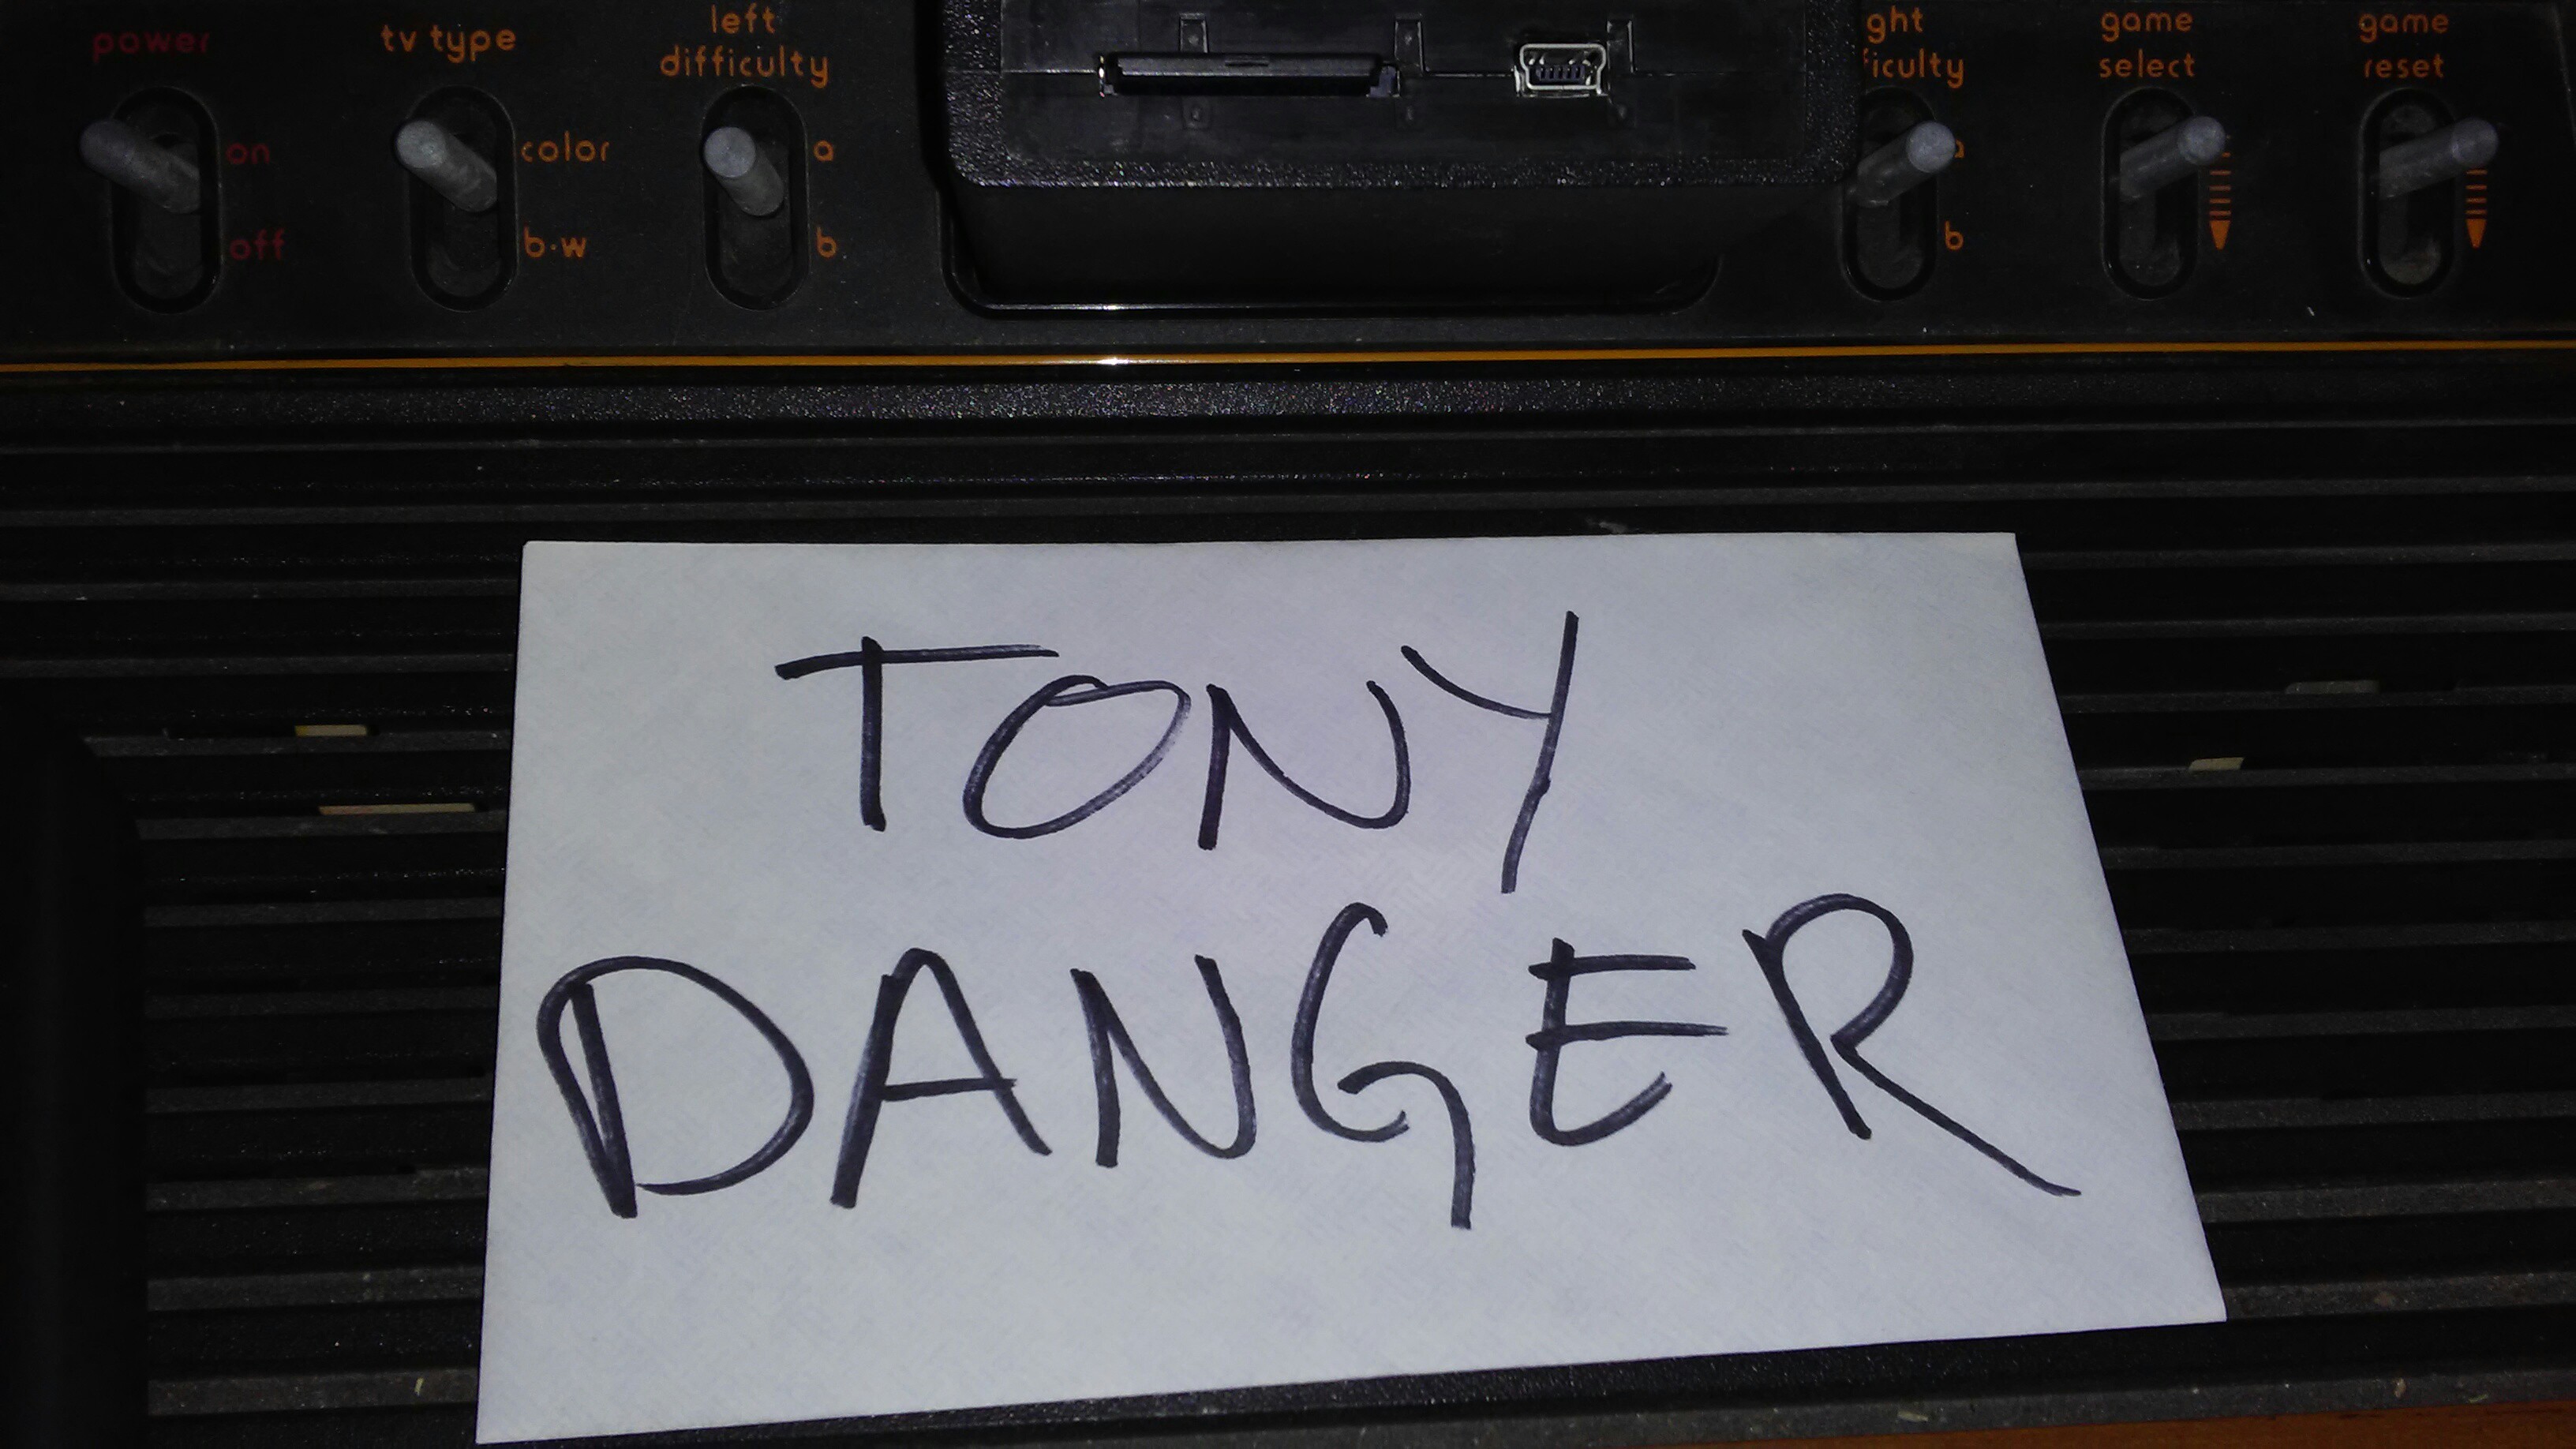 TonyDanger: Ms. Pac-Man (Atari 2600) 80,770 points on 2016-12-31 18:26:00